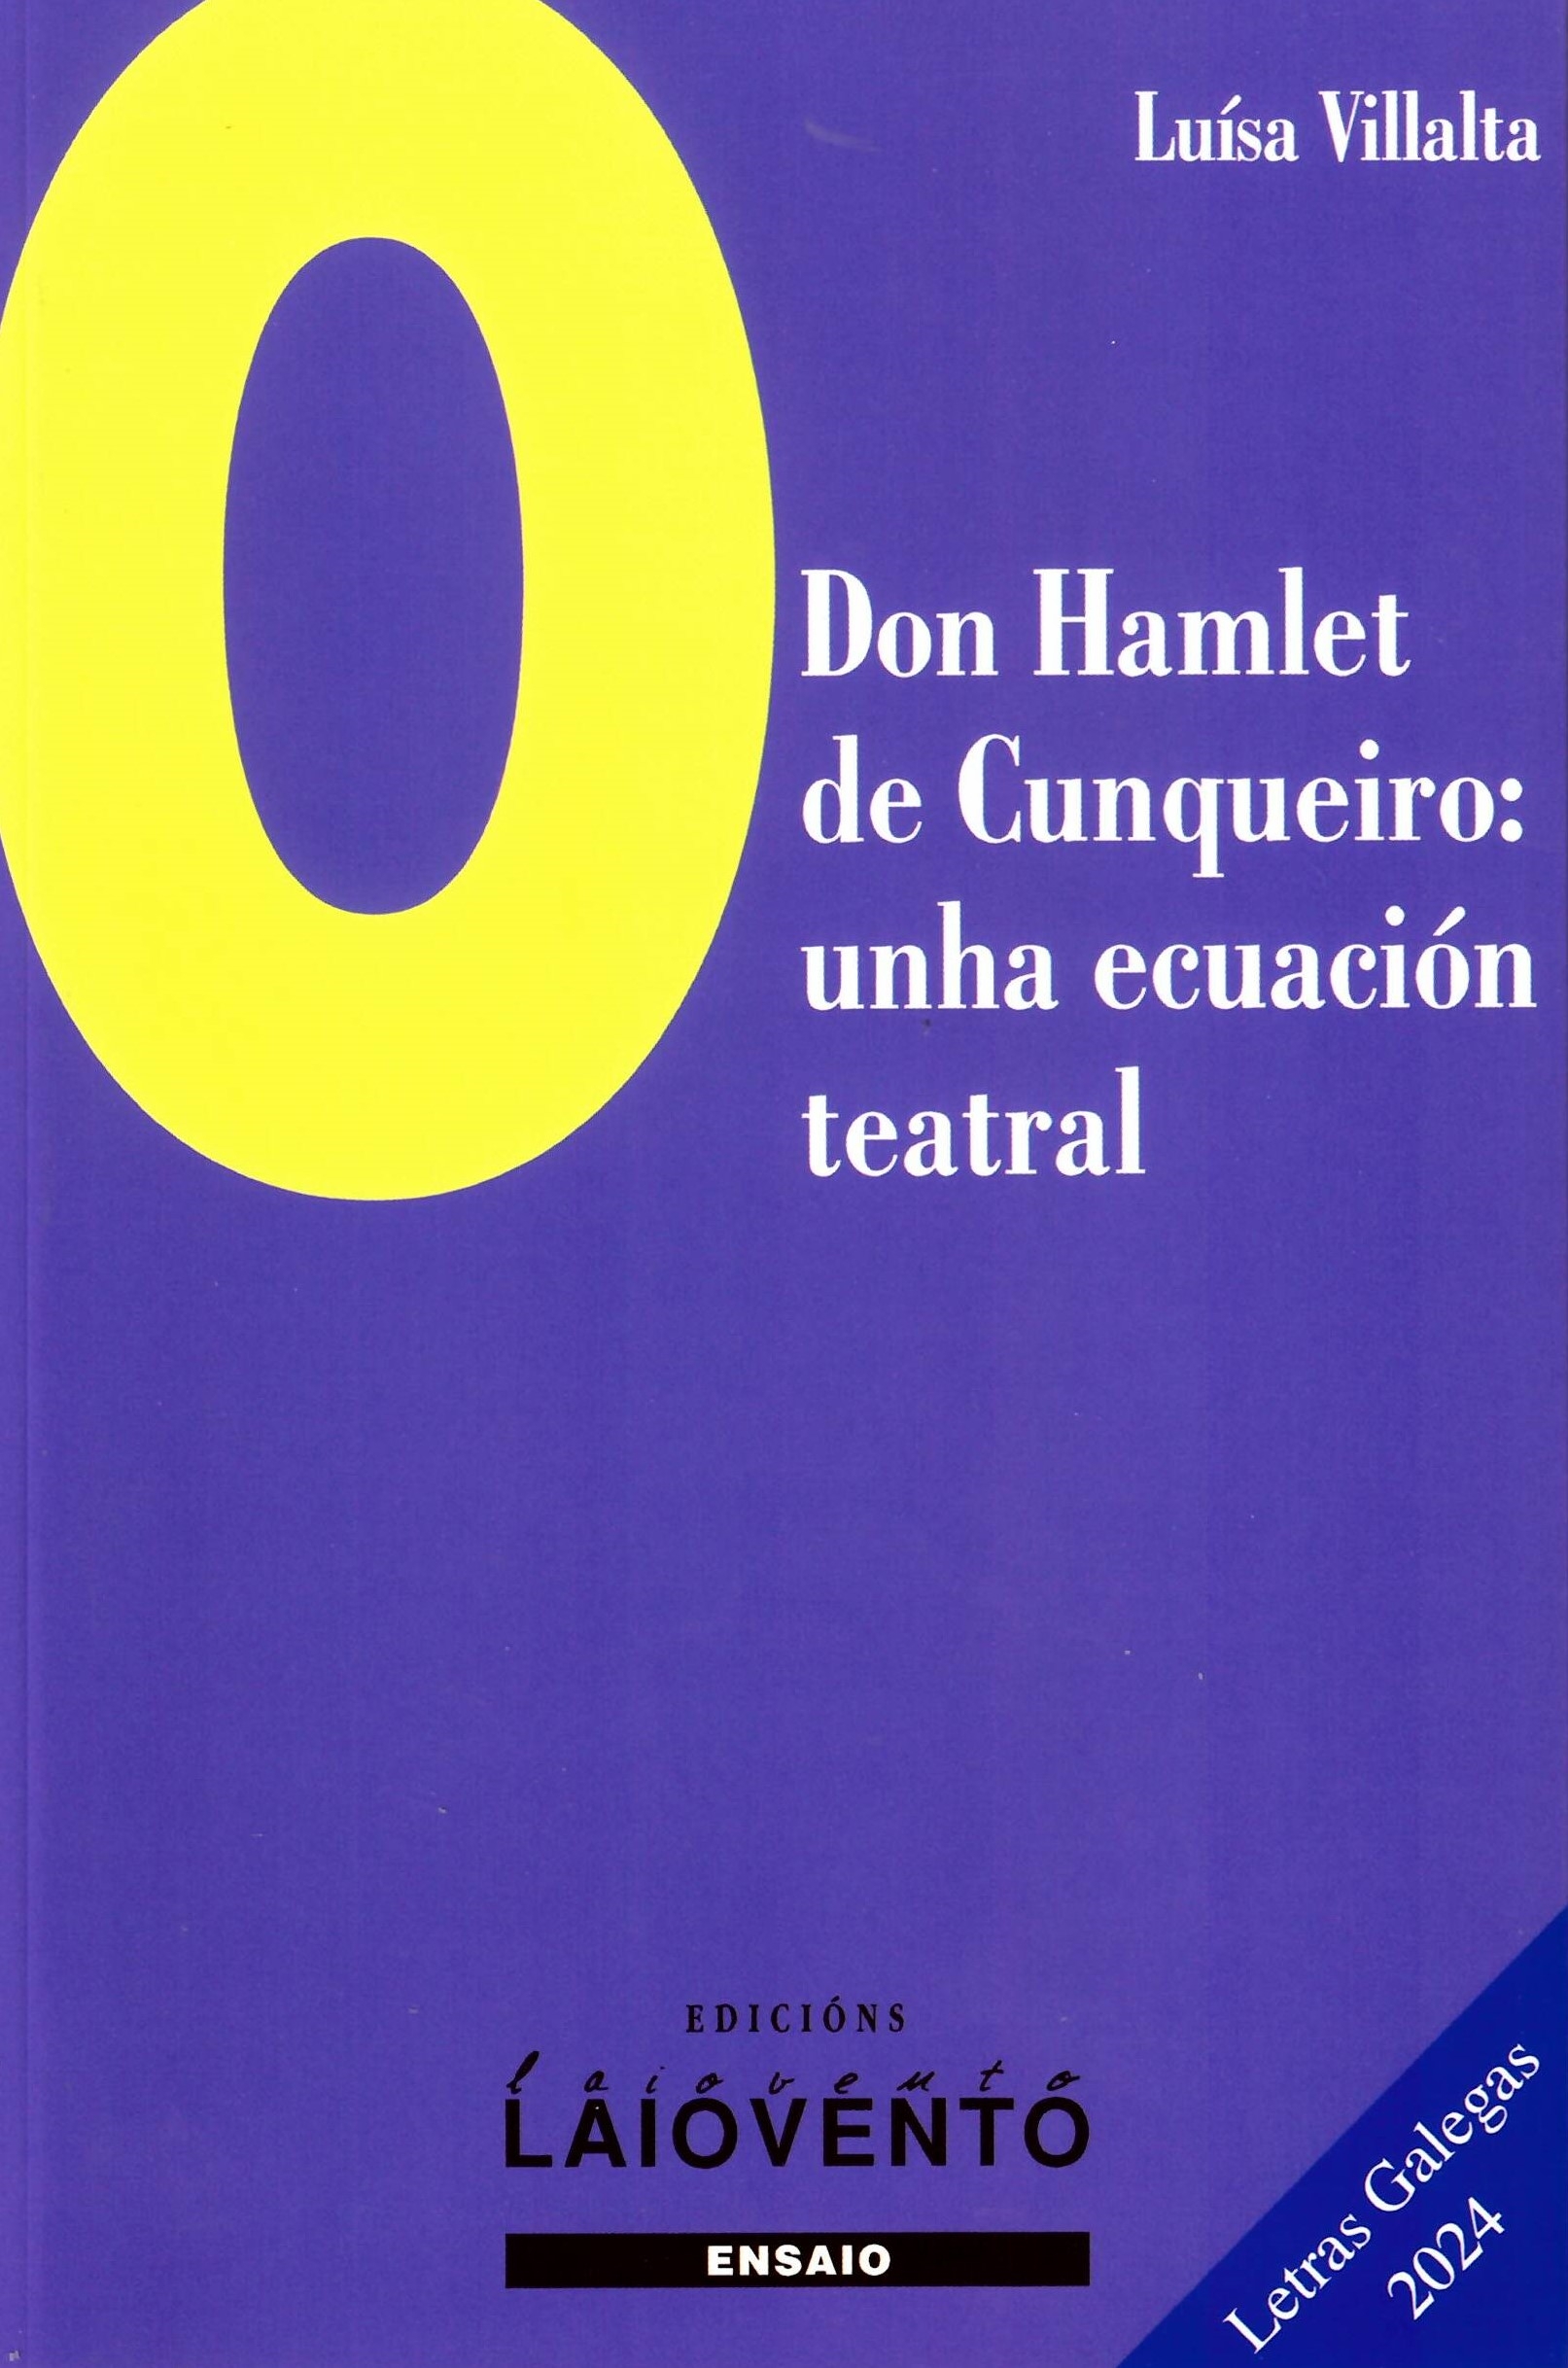 O DON HAMLET DE CUNQUEIRO:UNHA ECUACIÓN TEATRAL